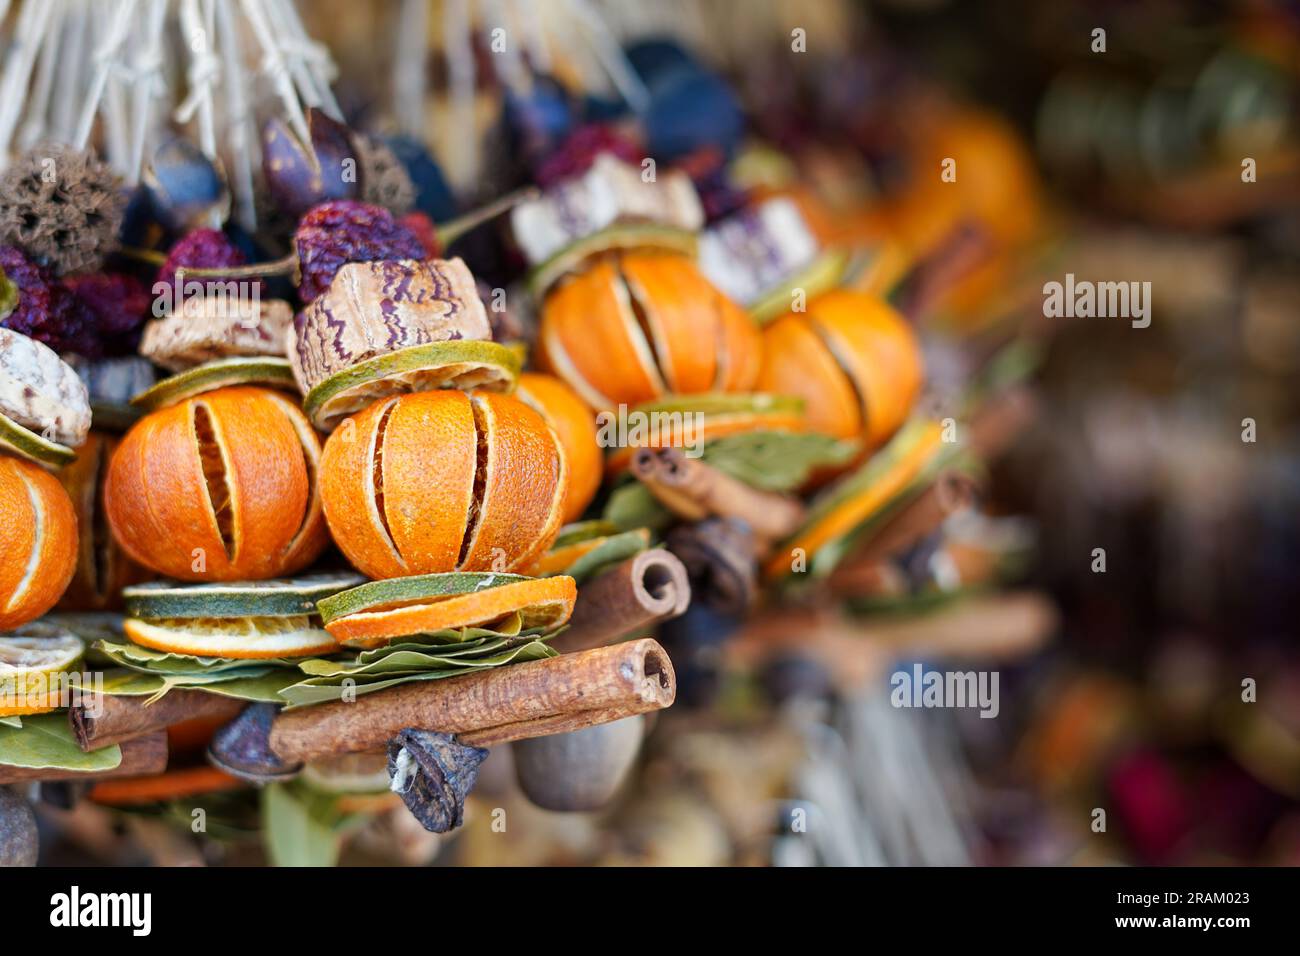 Sammlung von getrocknetem Obst, Gemüse und Gewürzen auf dem Markt Stockfoto